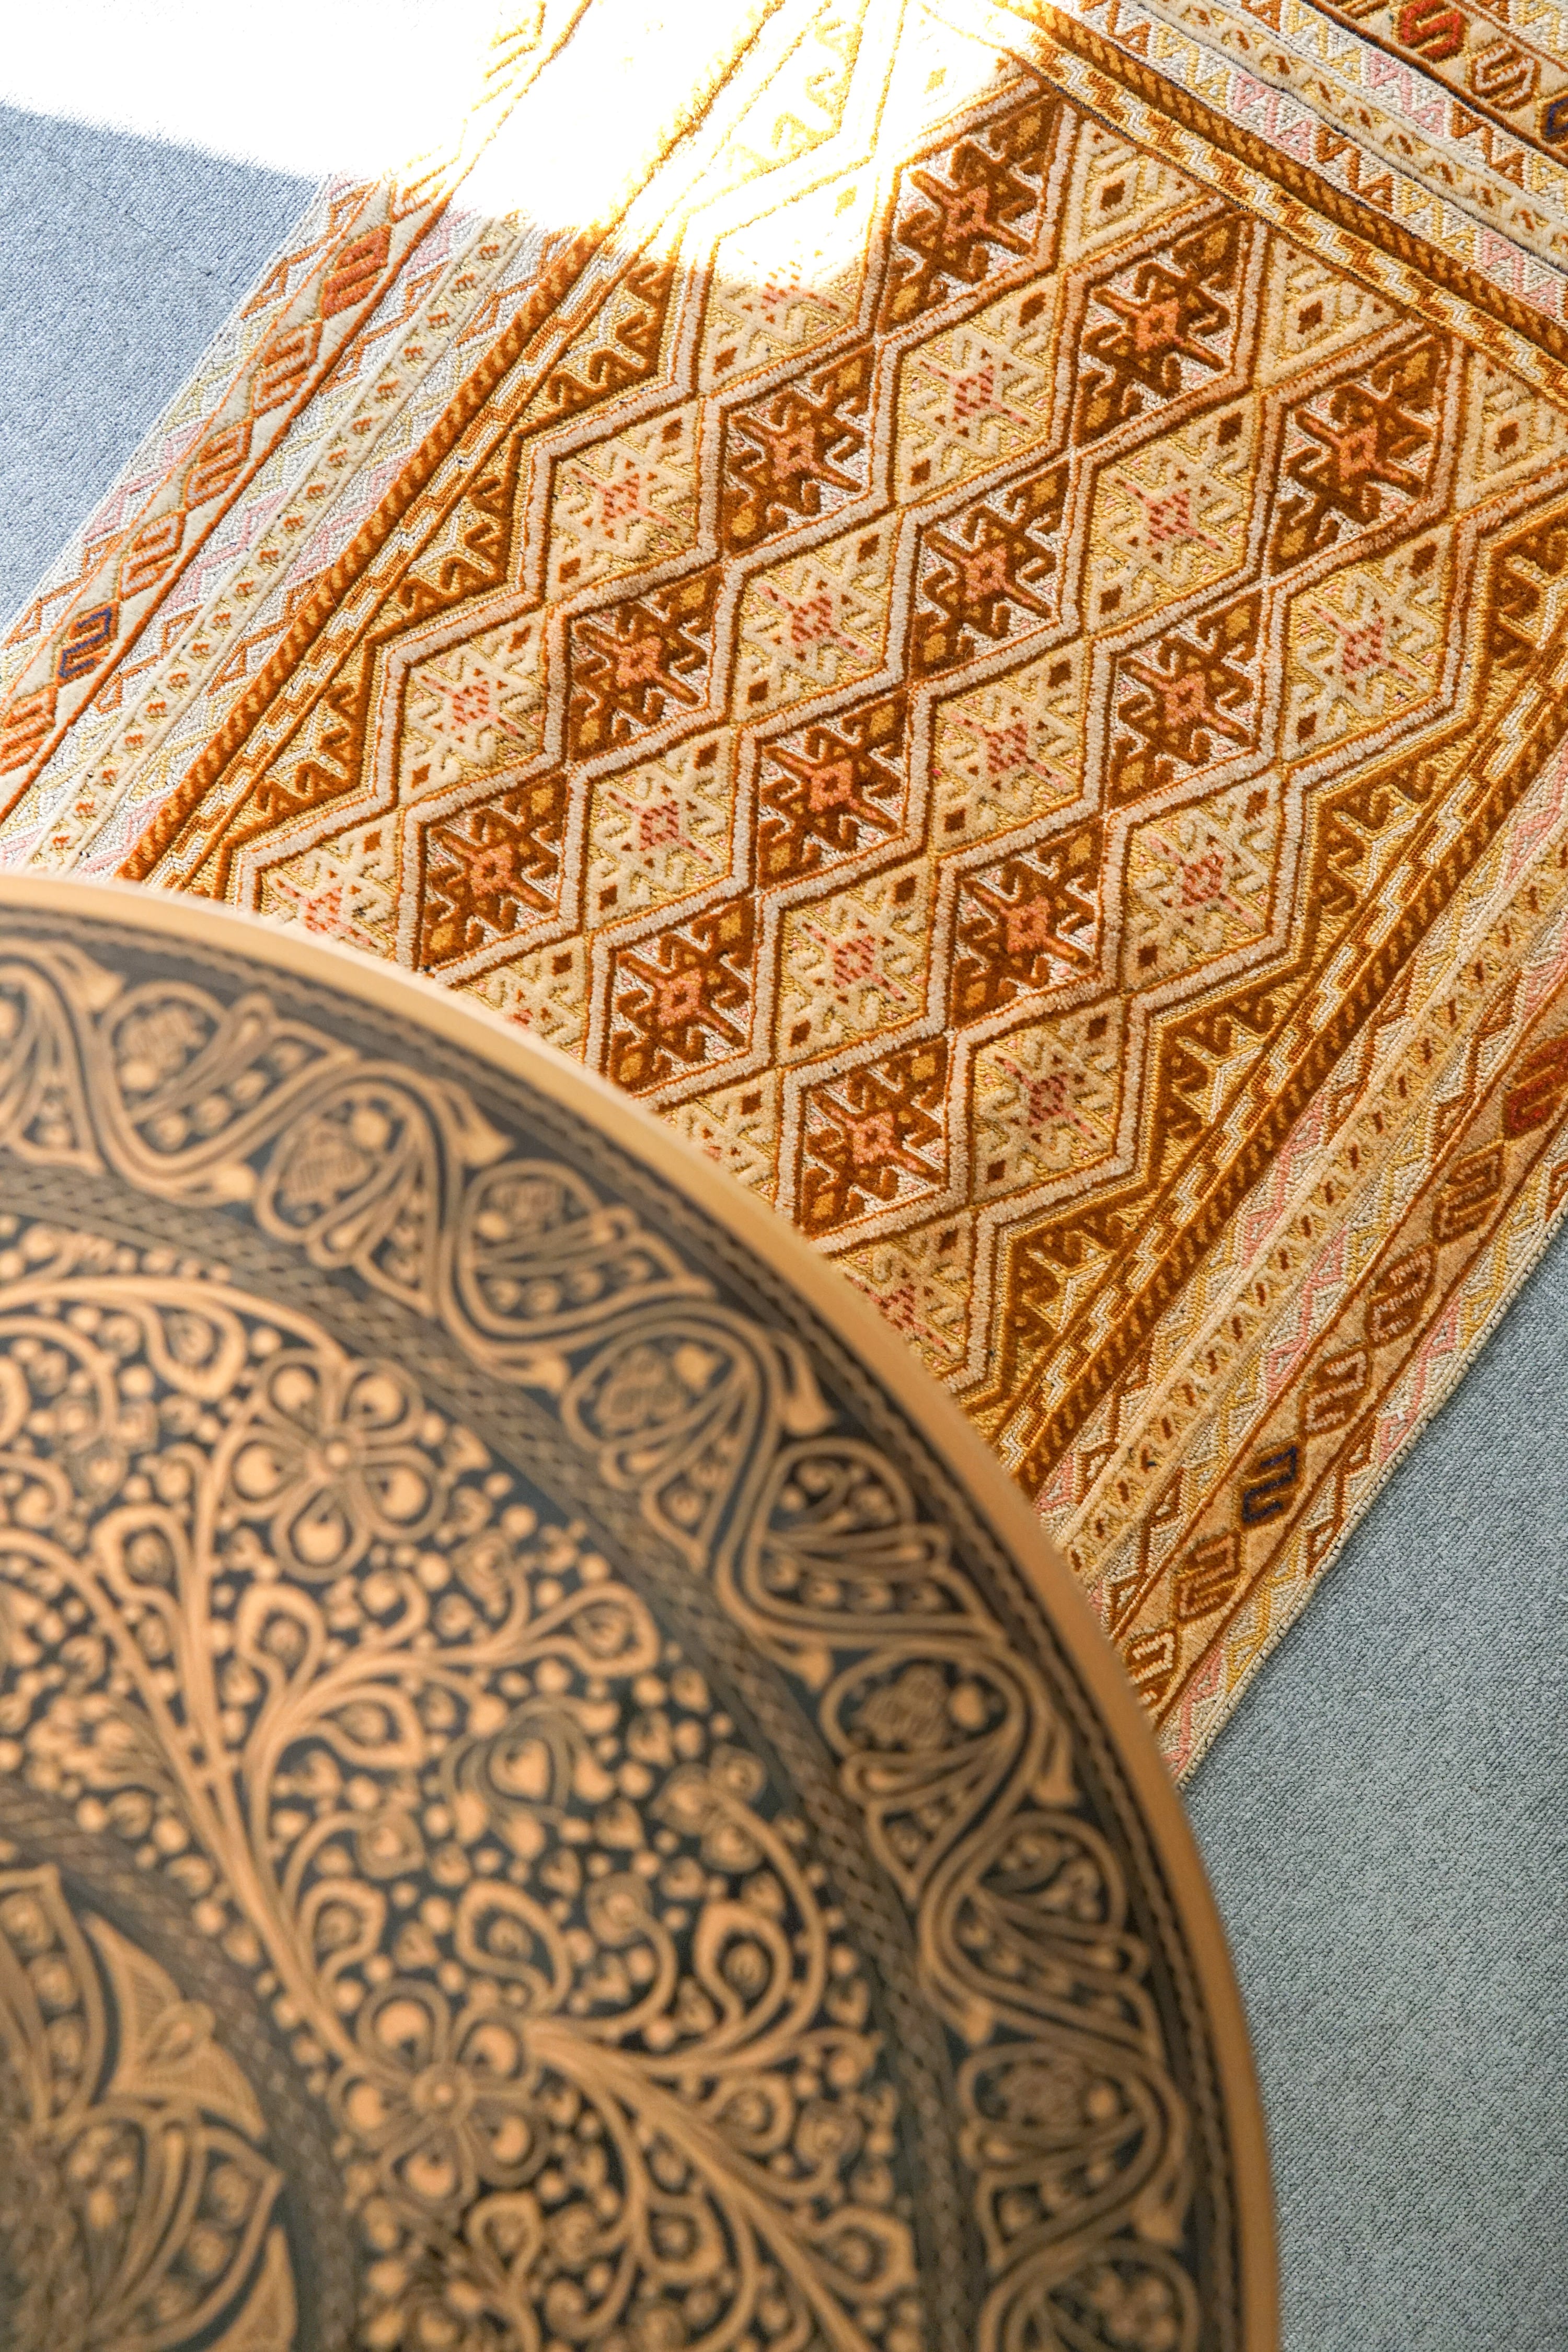 アフガニスタン マシュワニキリム 手織り絨毯 size:115㎝ × 76cm-